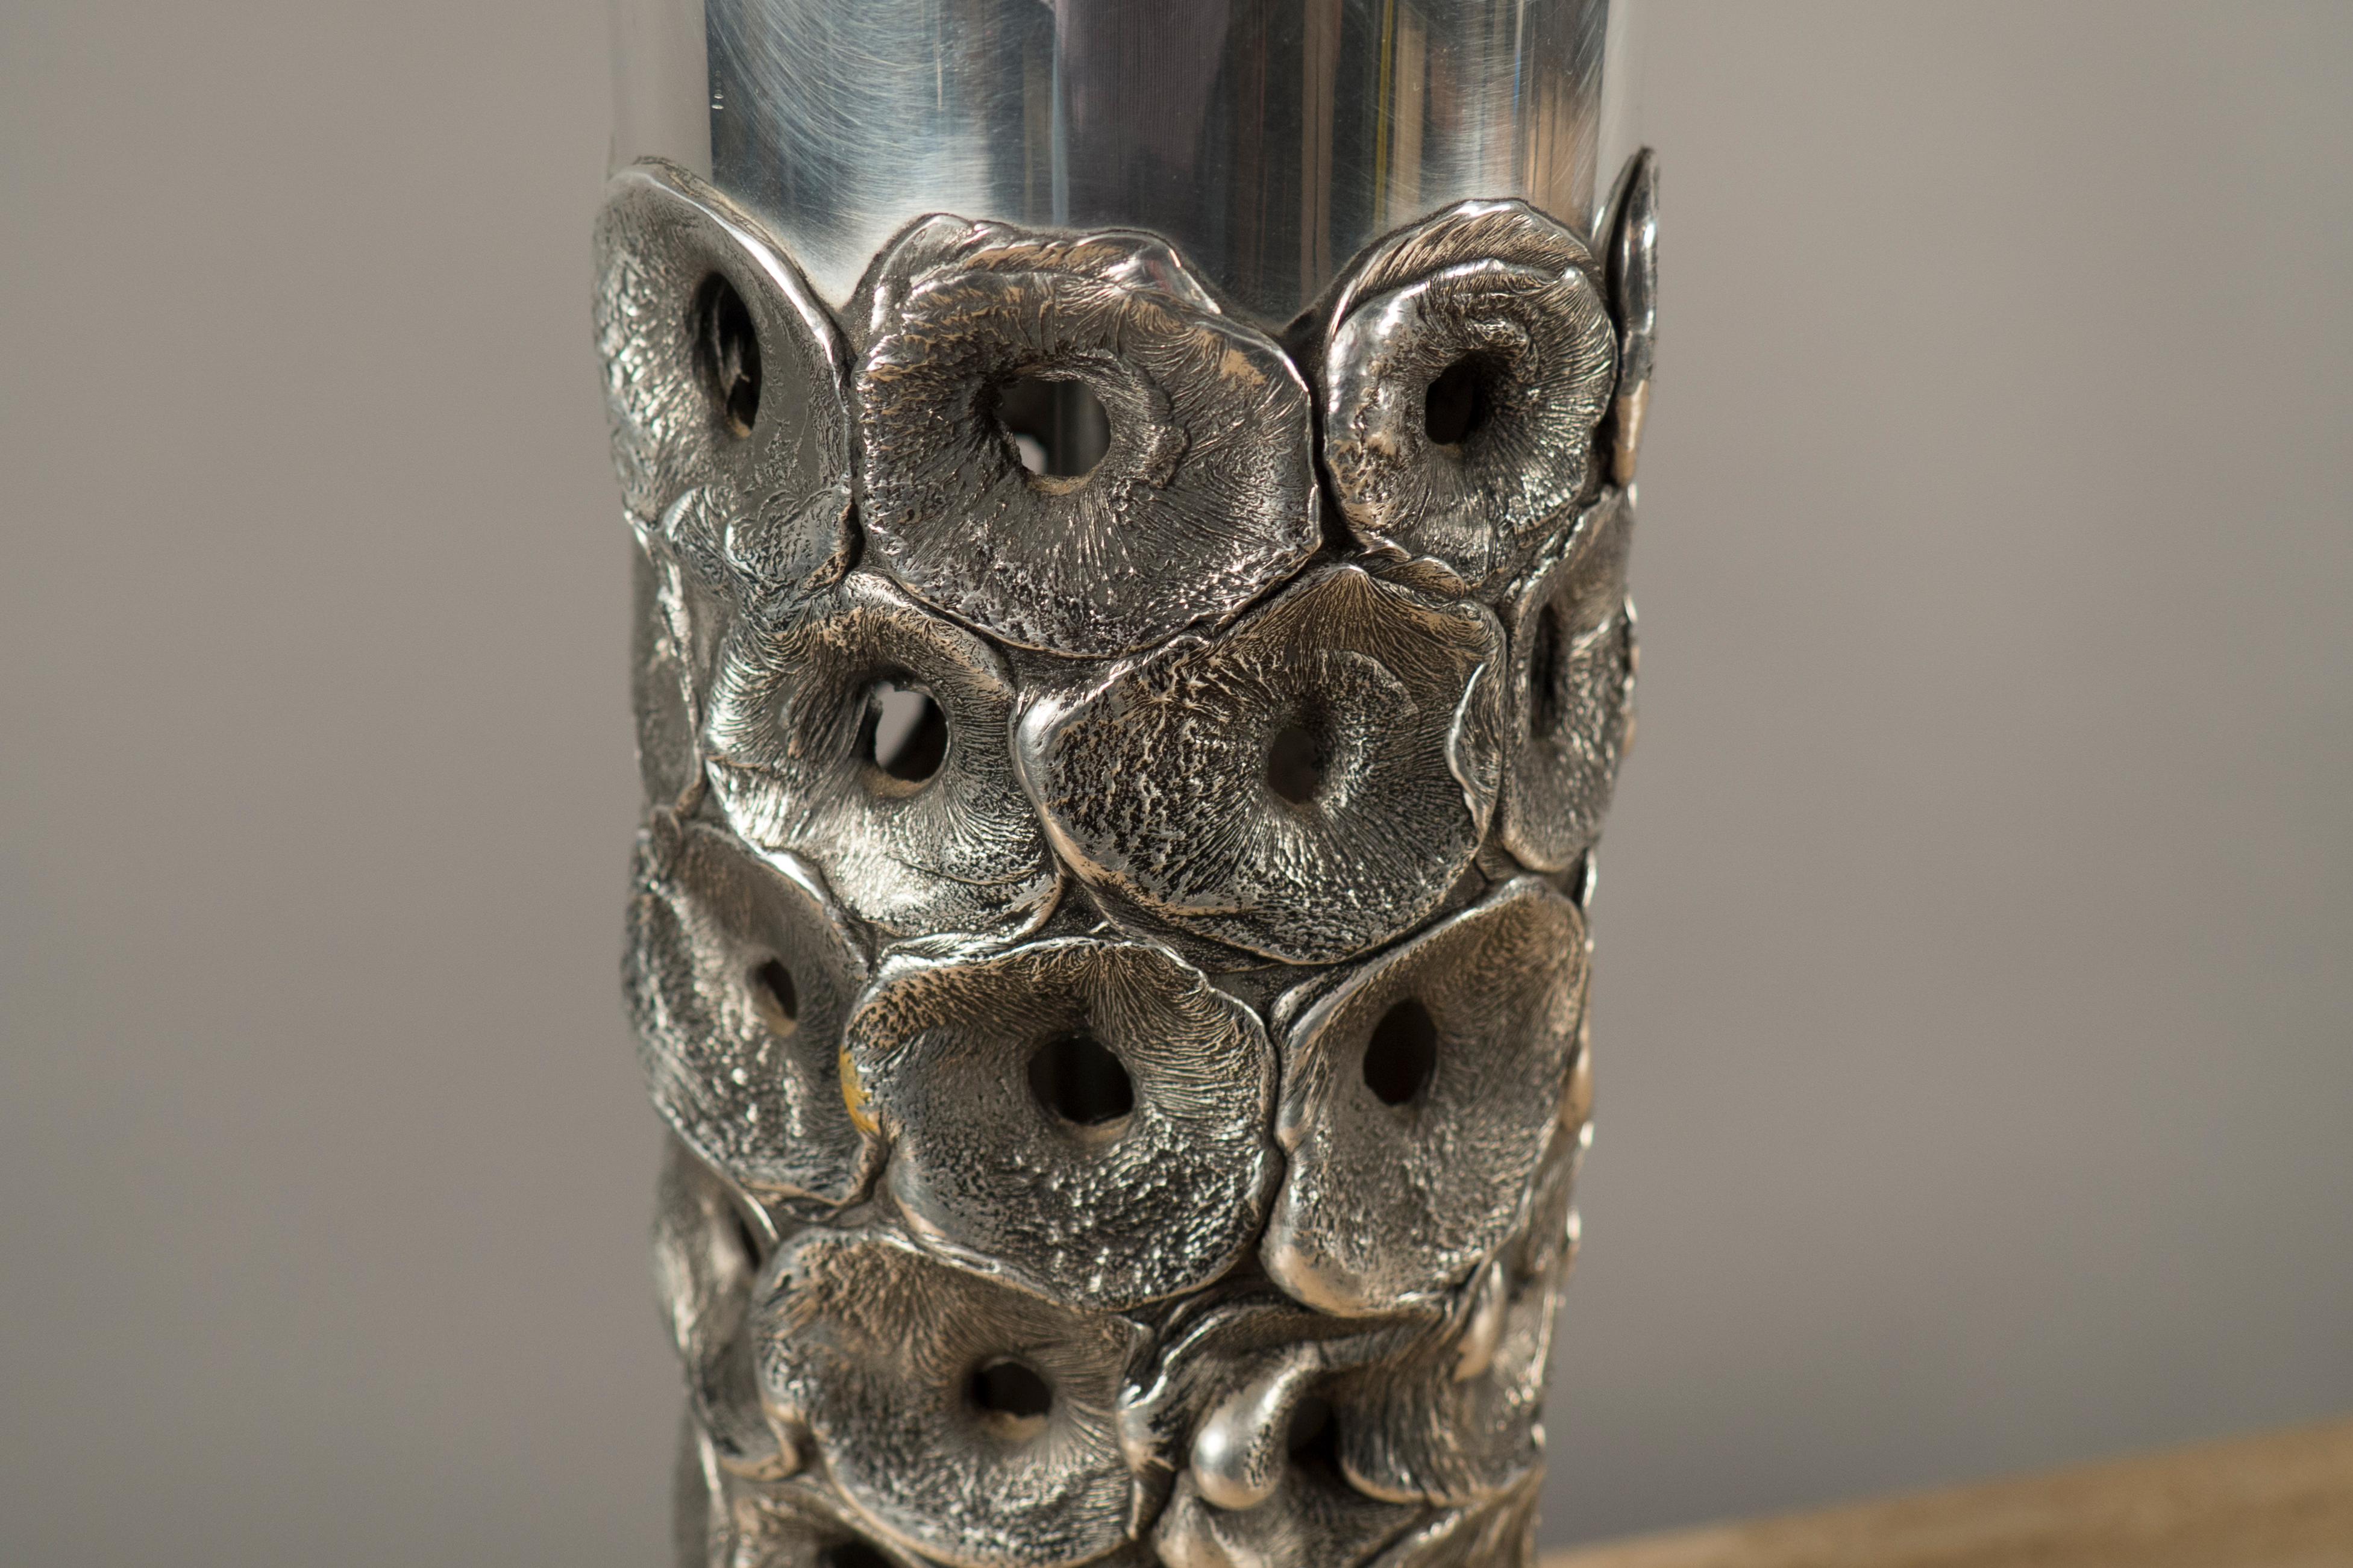 Zylindrischer Aluminiumkörper mit kreisförmigen Scheiben, die in der Mitte ein Loch aufweisen.
 
(Lampenschirm nicht enthalten)